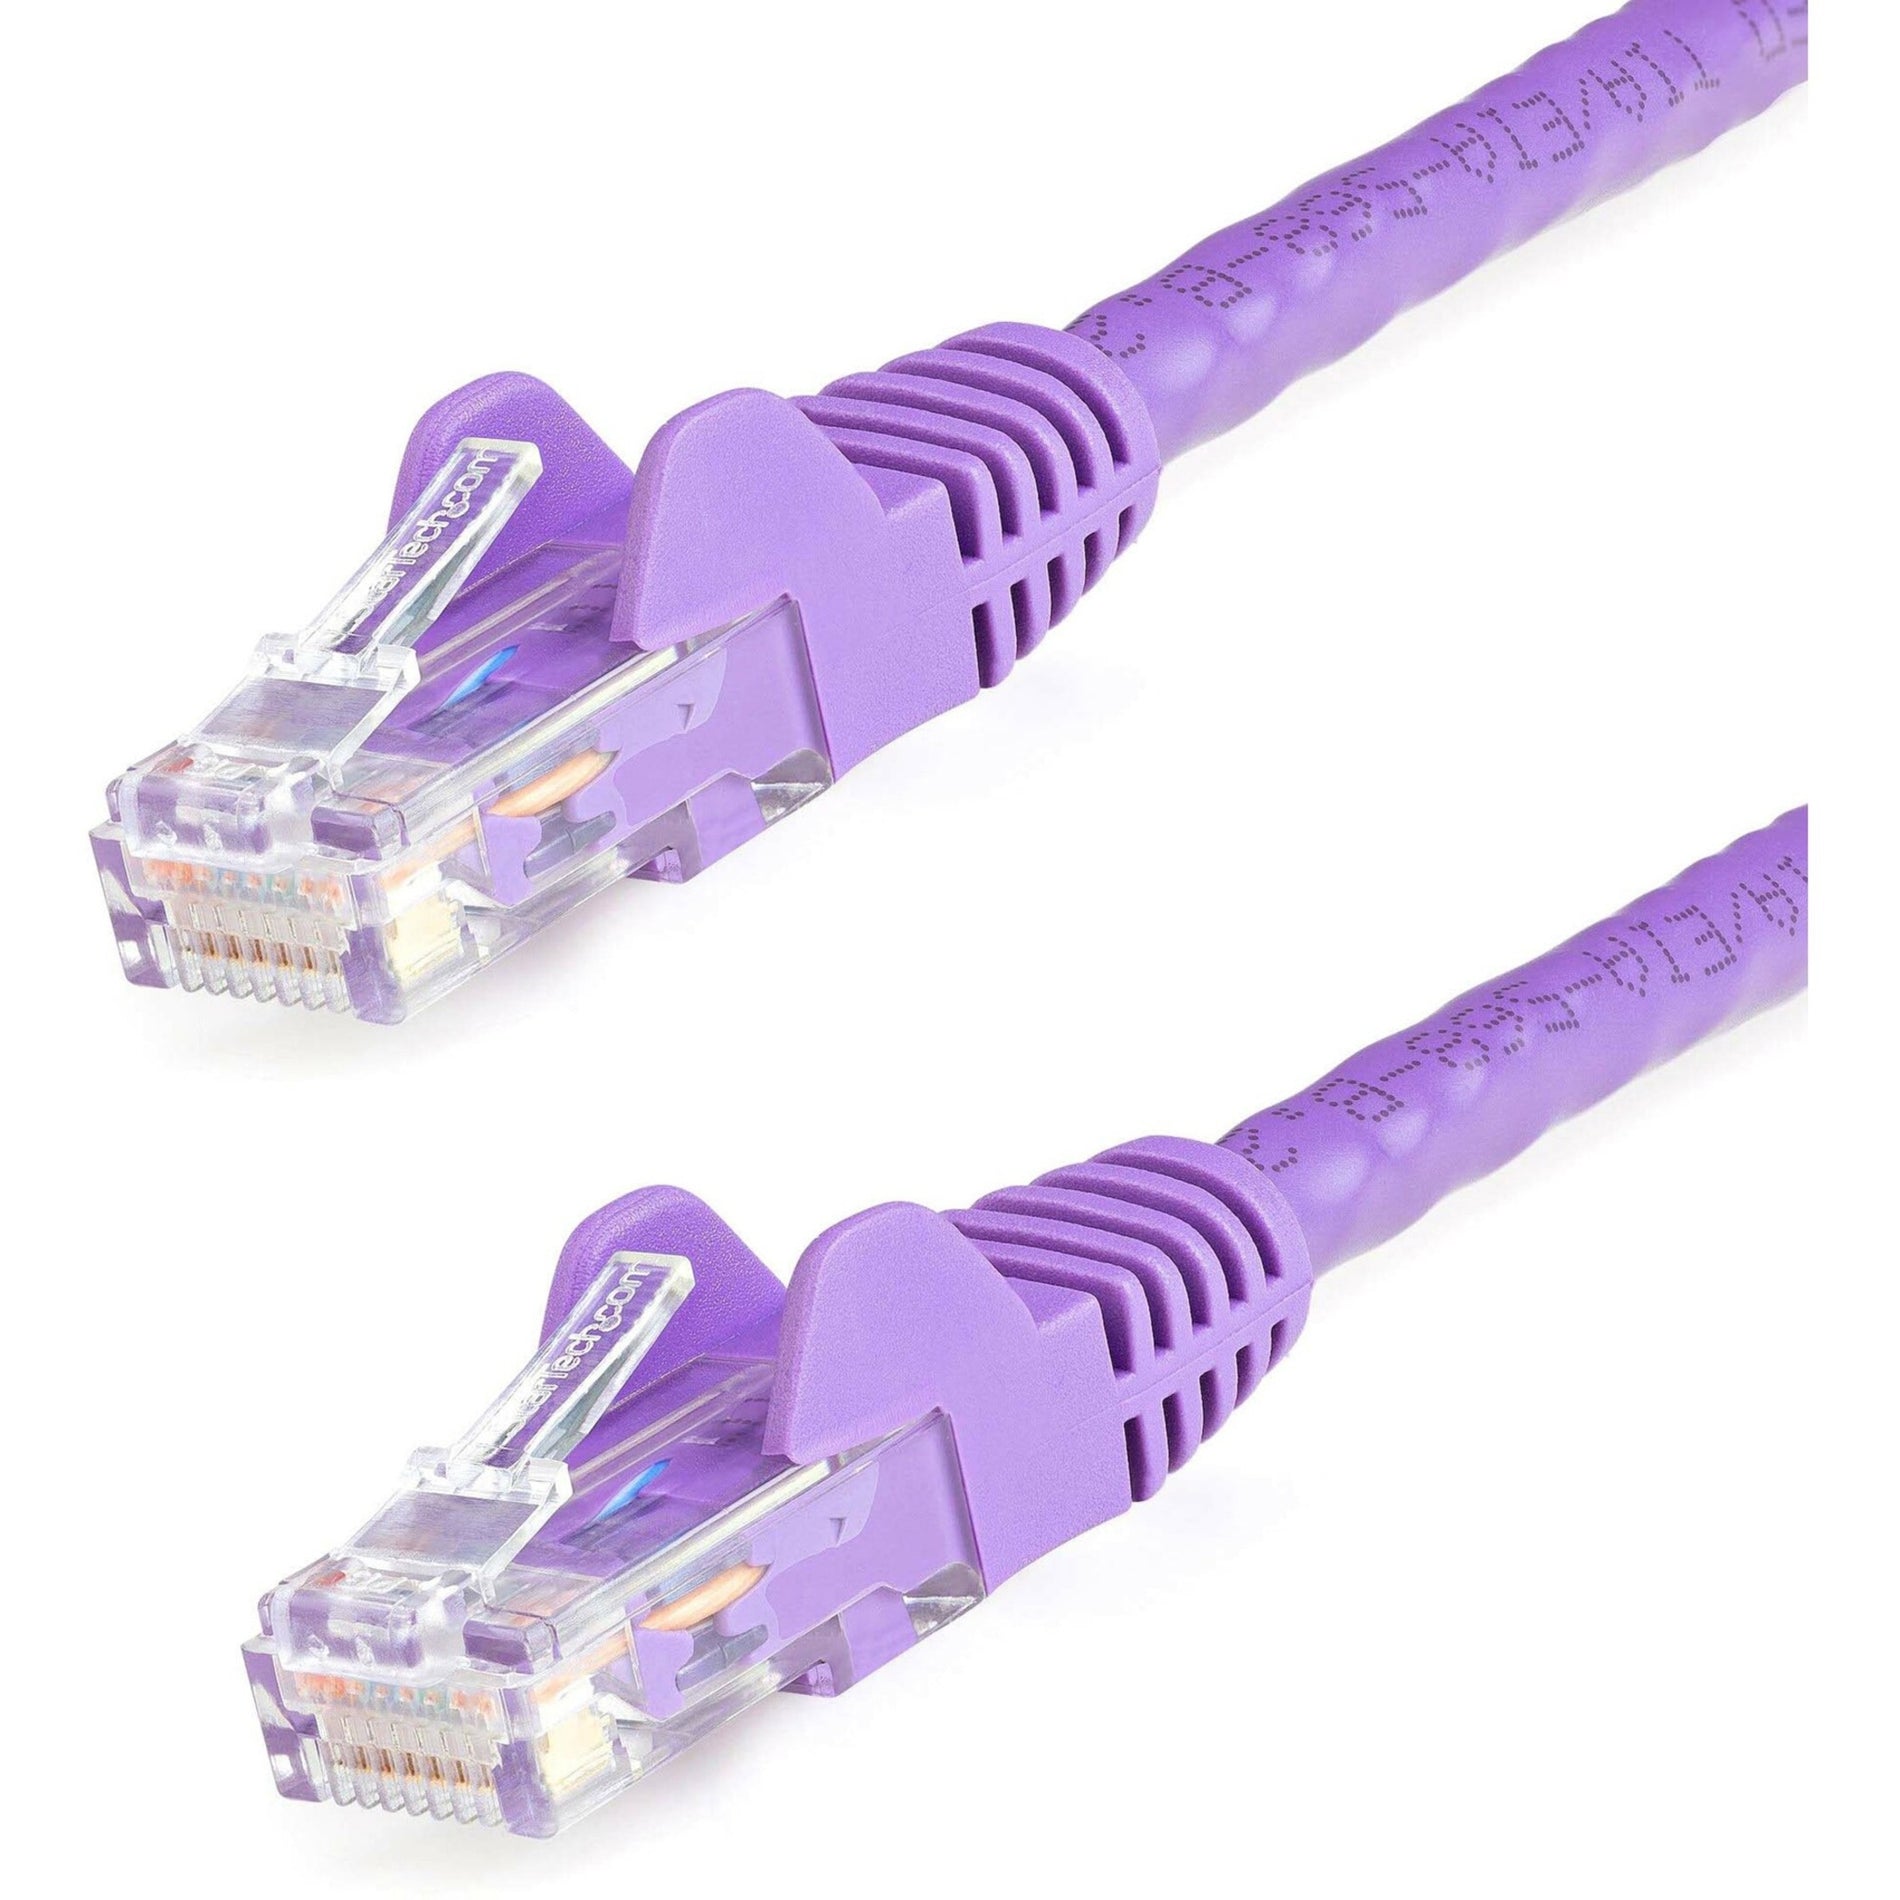 StarTech.com N6PATCH30PL Cat6 Patch Cable, 30ft Purple Ethernet Cable, Snagless RJ45 Connectors